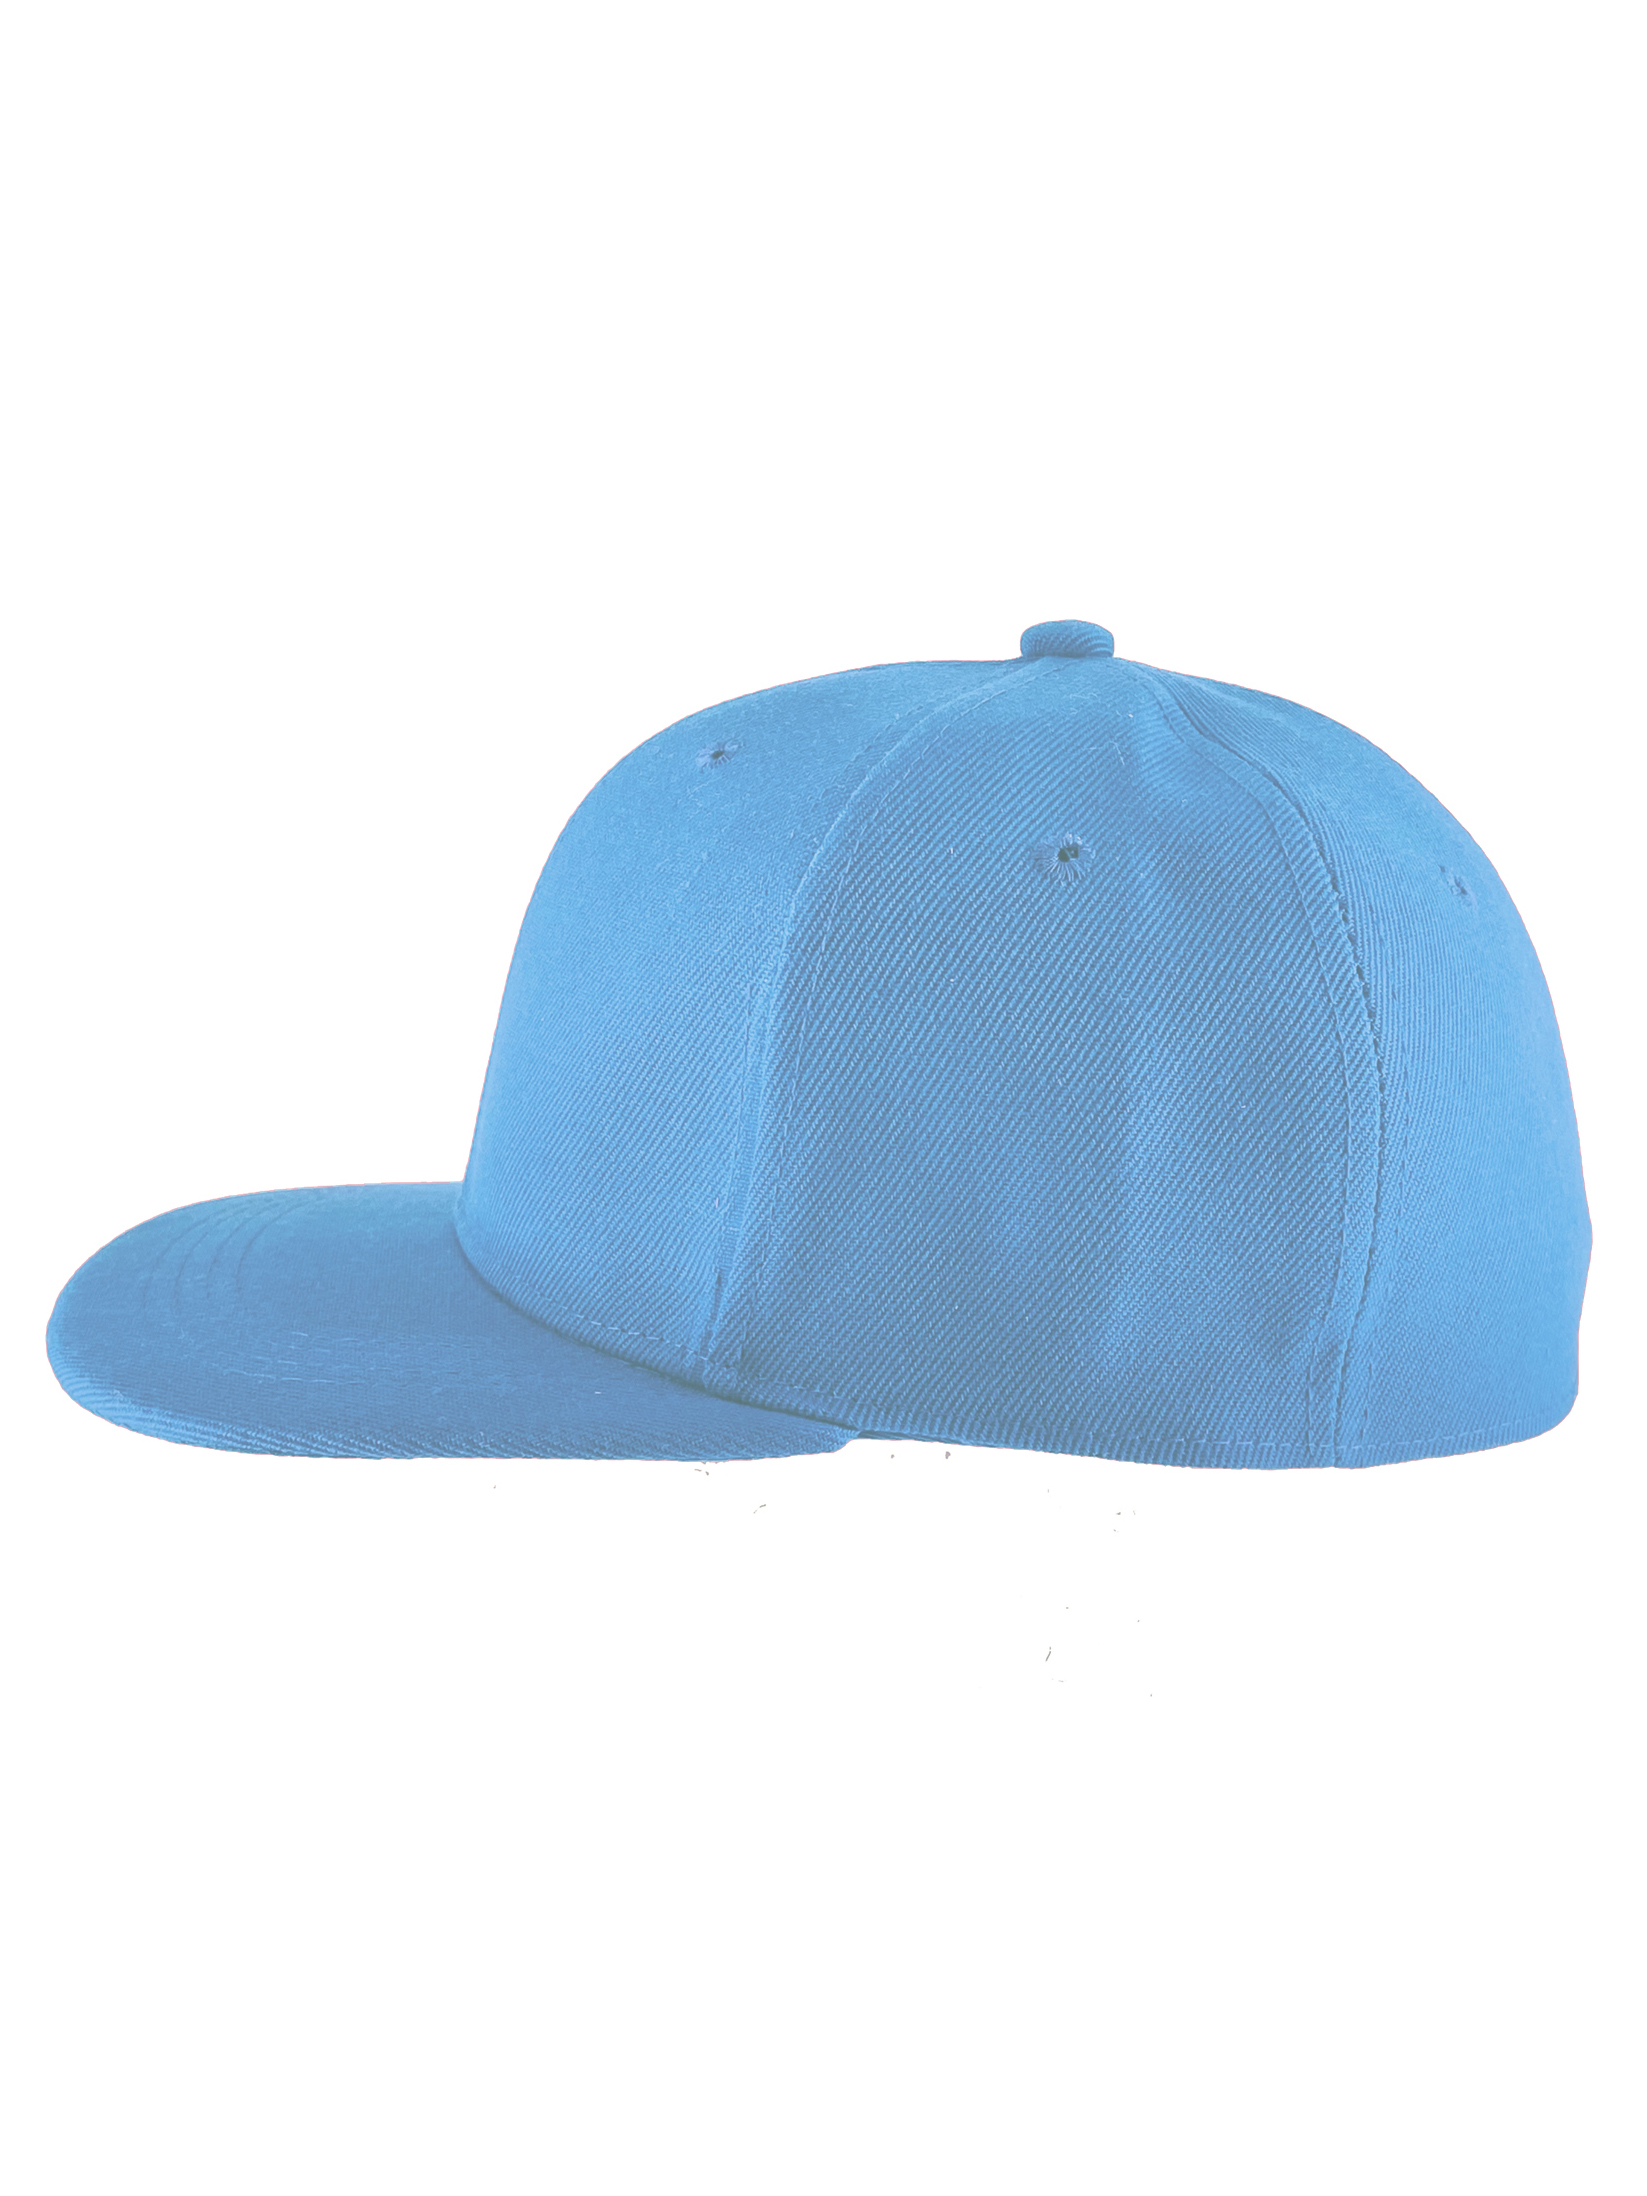 Top Headwear Plain Flat Bill Fitted Hat, Sky Blue 7 3/4 - image 4 of 4